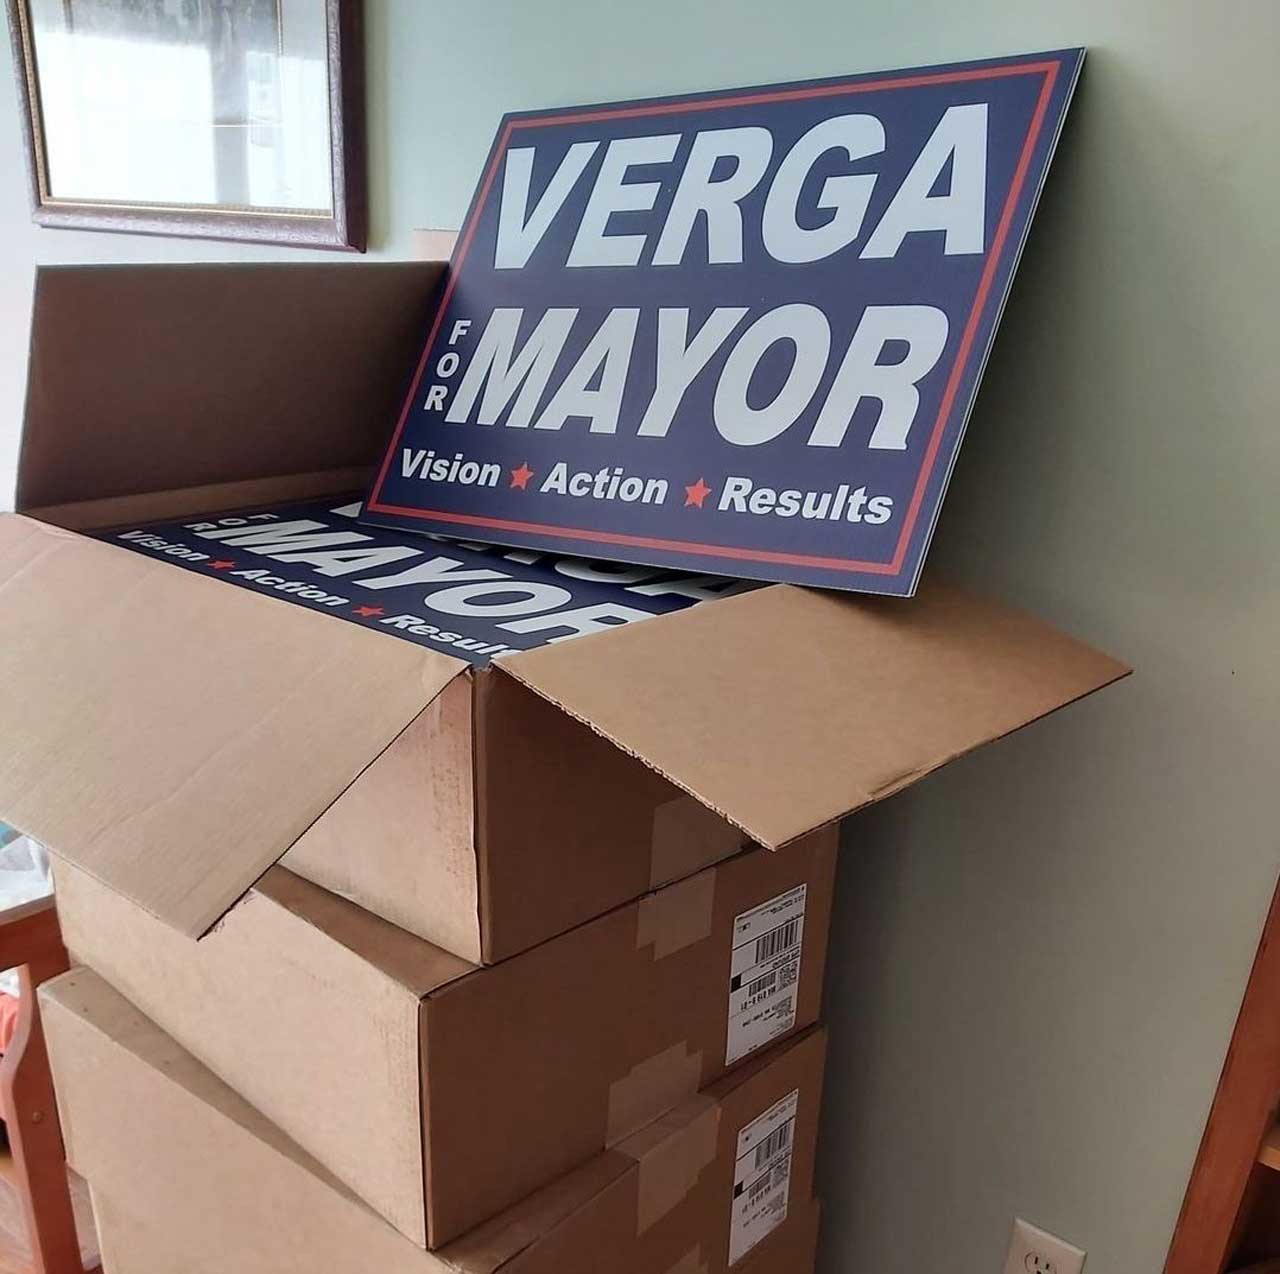 Greg Verga y carteles con su nombre durante campaña en Estados Unidos viral en México